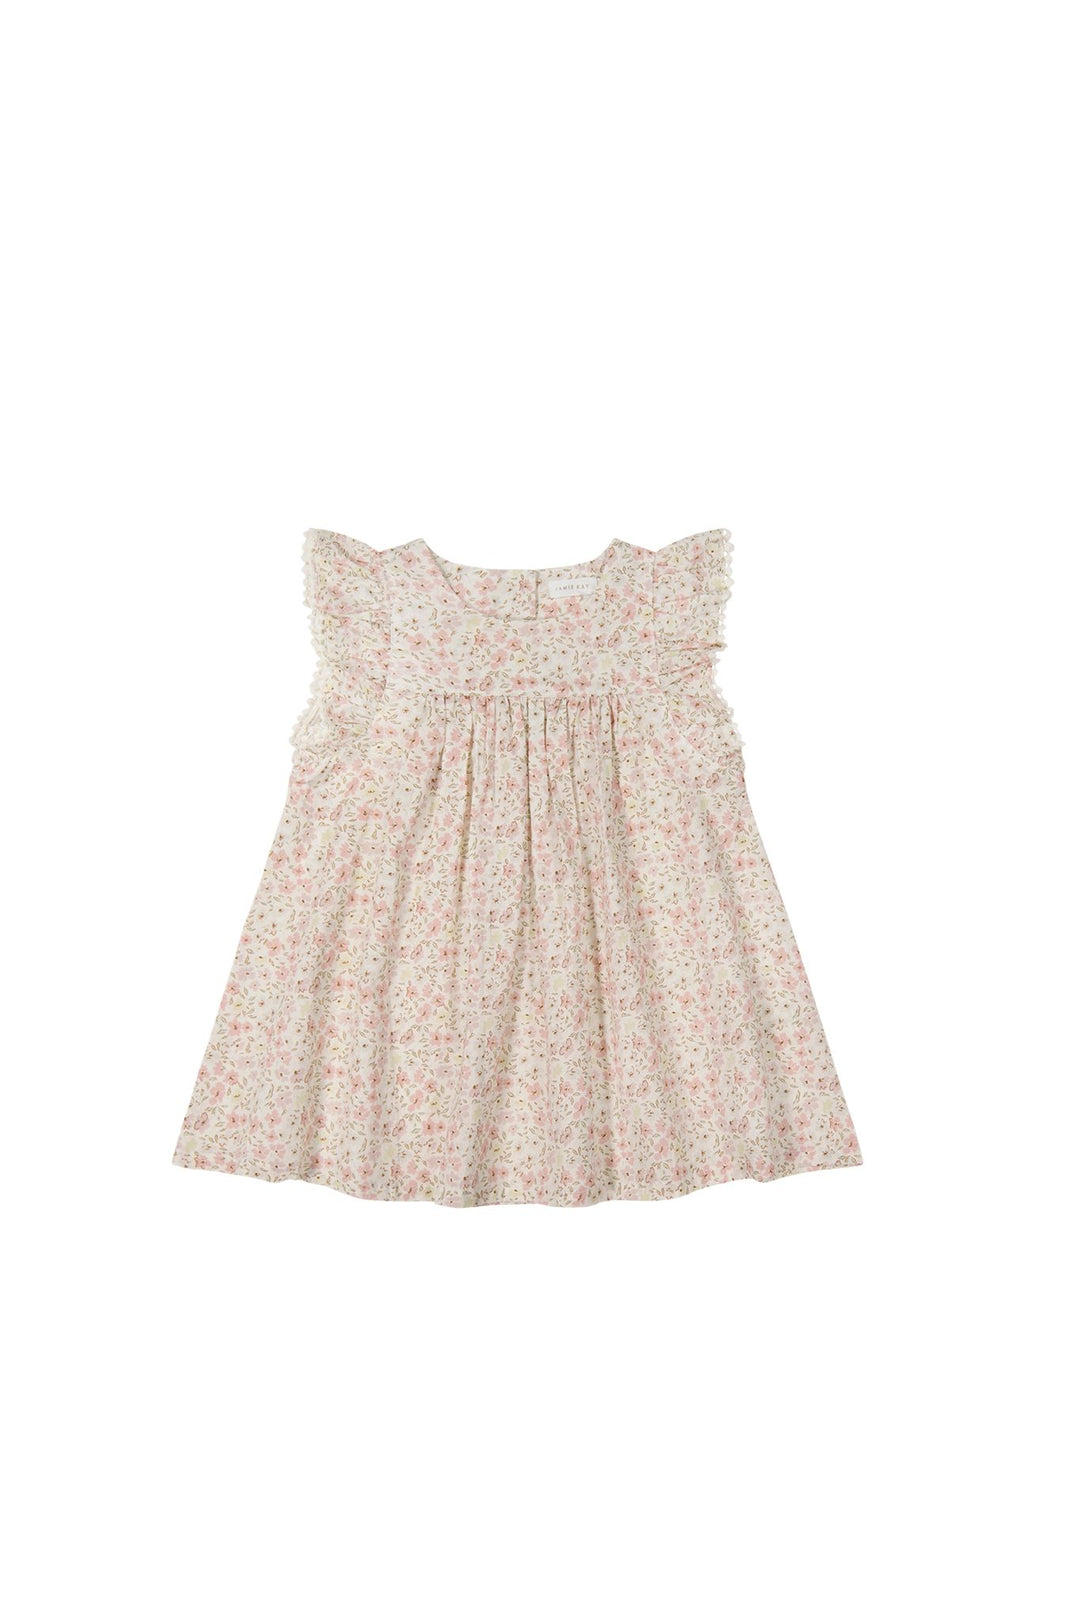 Organic Cotton Eleanor Dress - Fifi Floral - JL & CO. boutique 